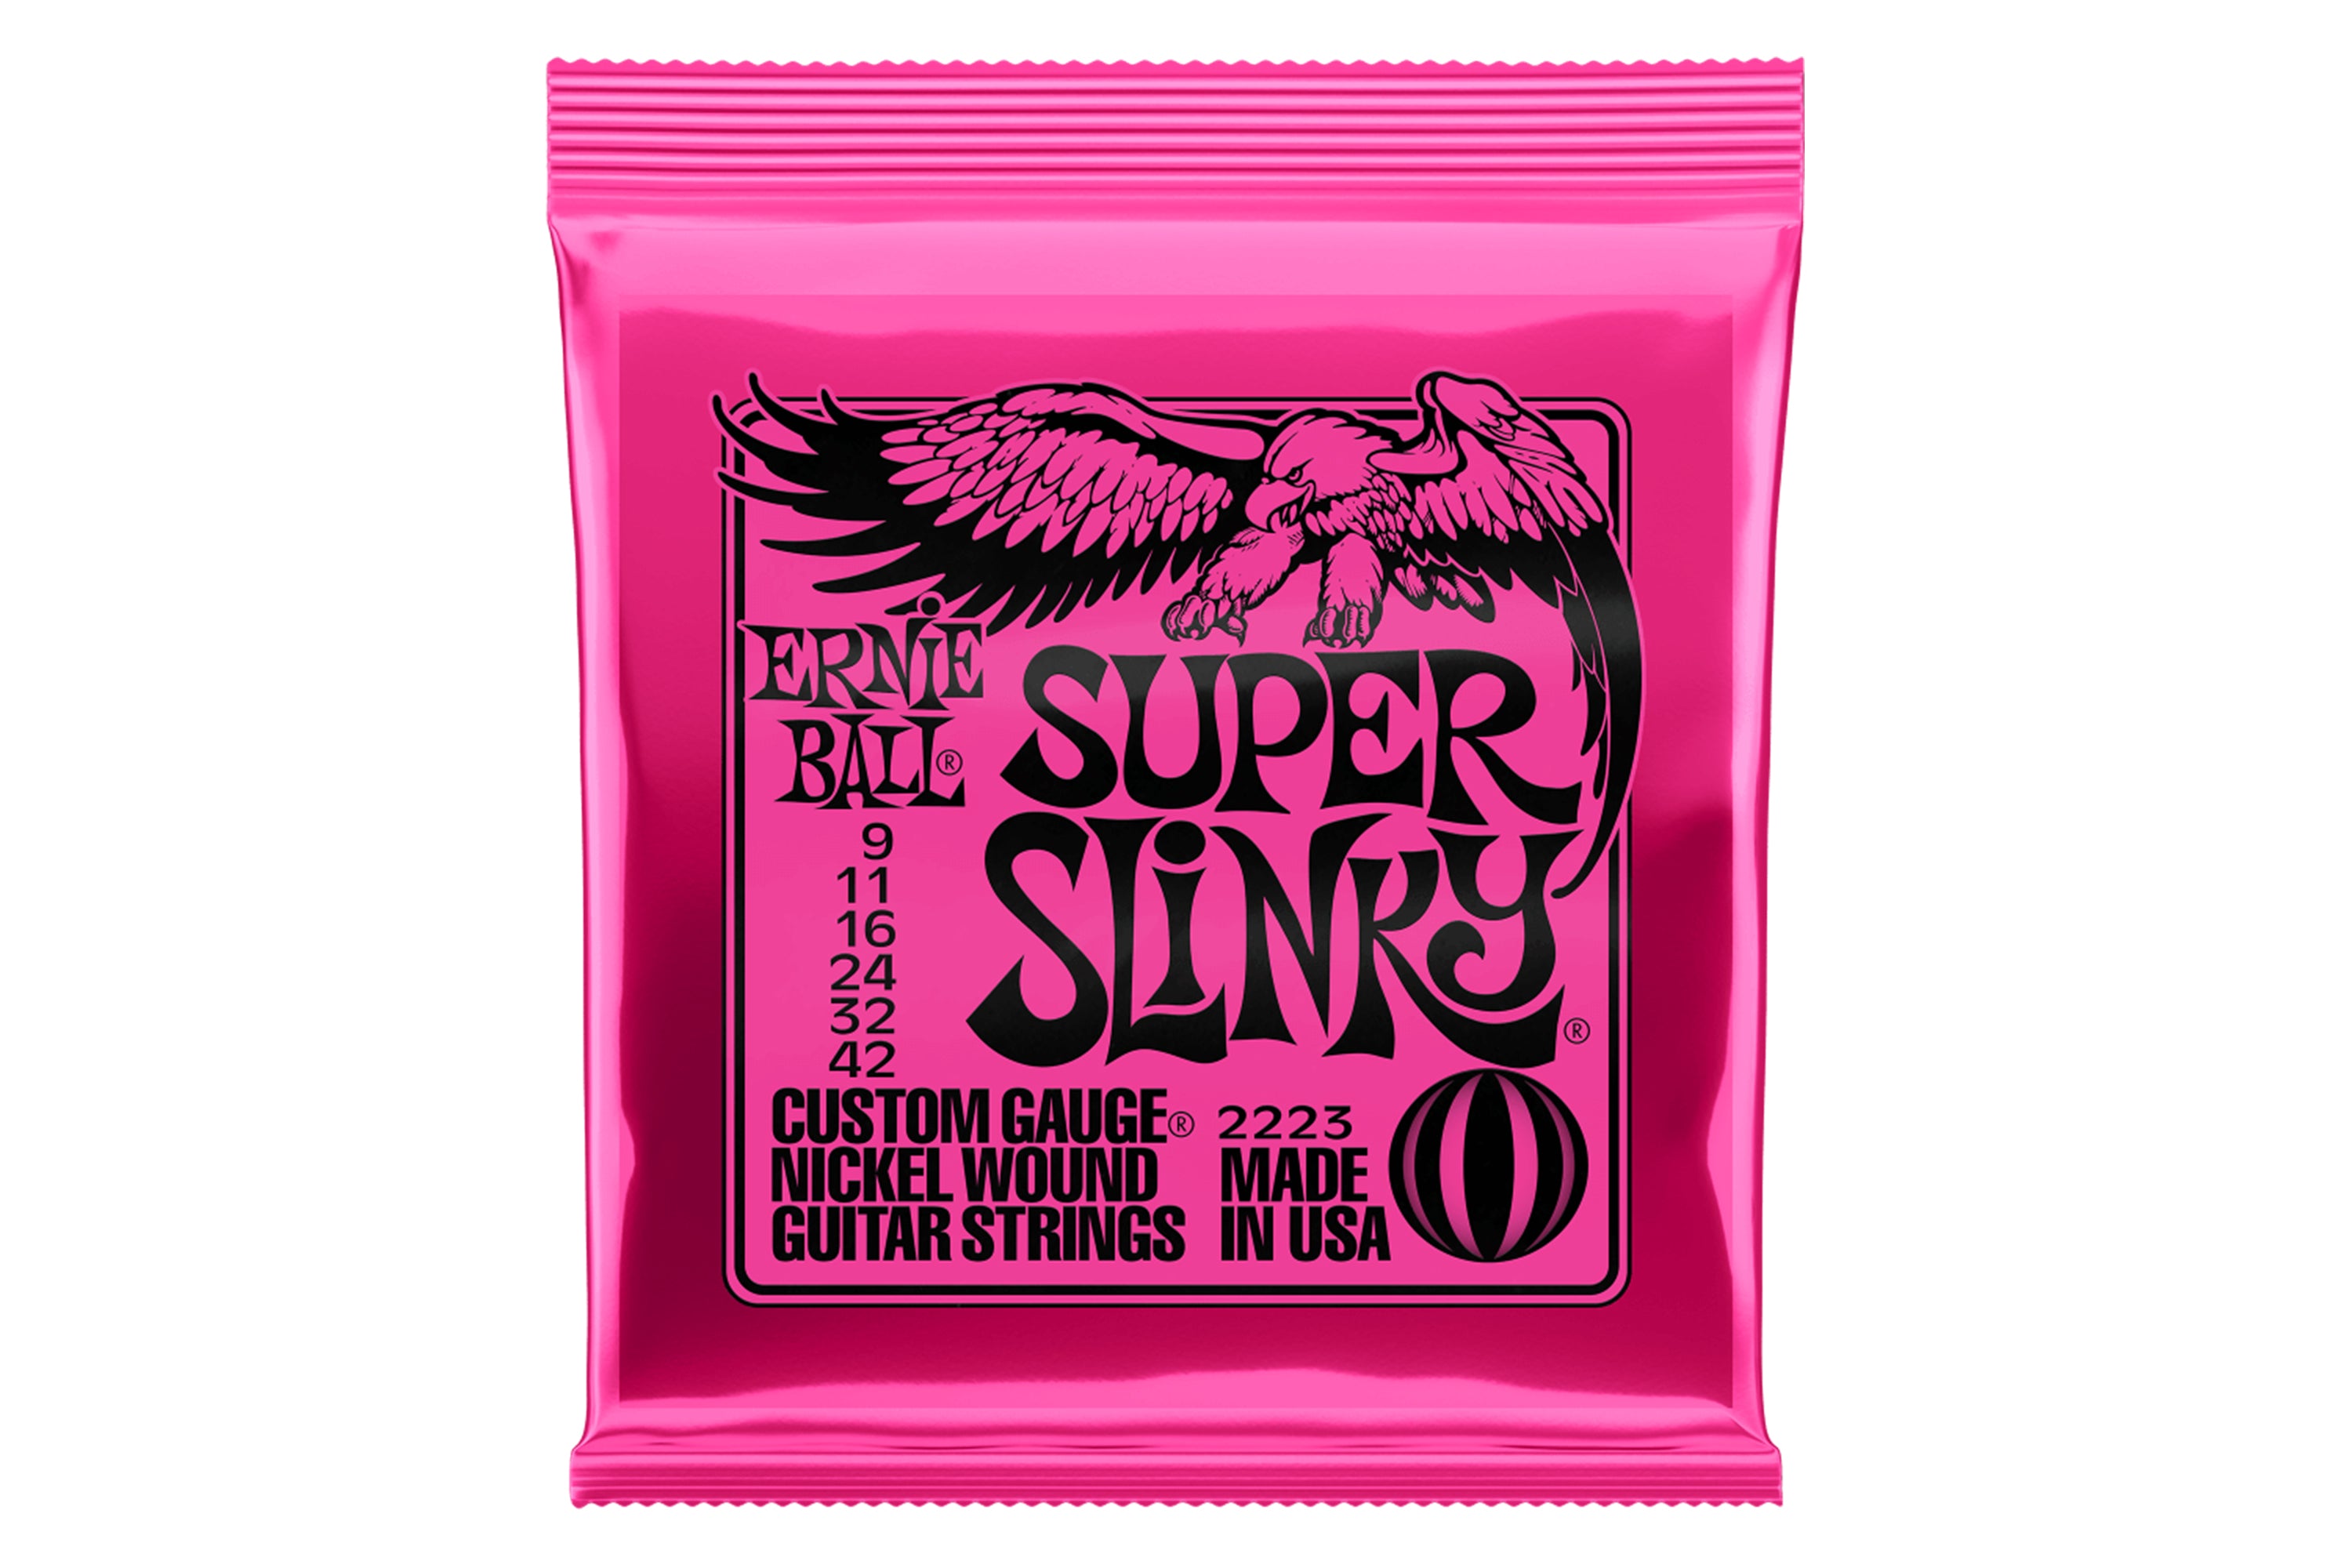 Ernie Ball Super Slinky Nickel Electric Guitar Strings - 9-42 Gauge